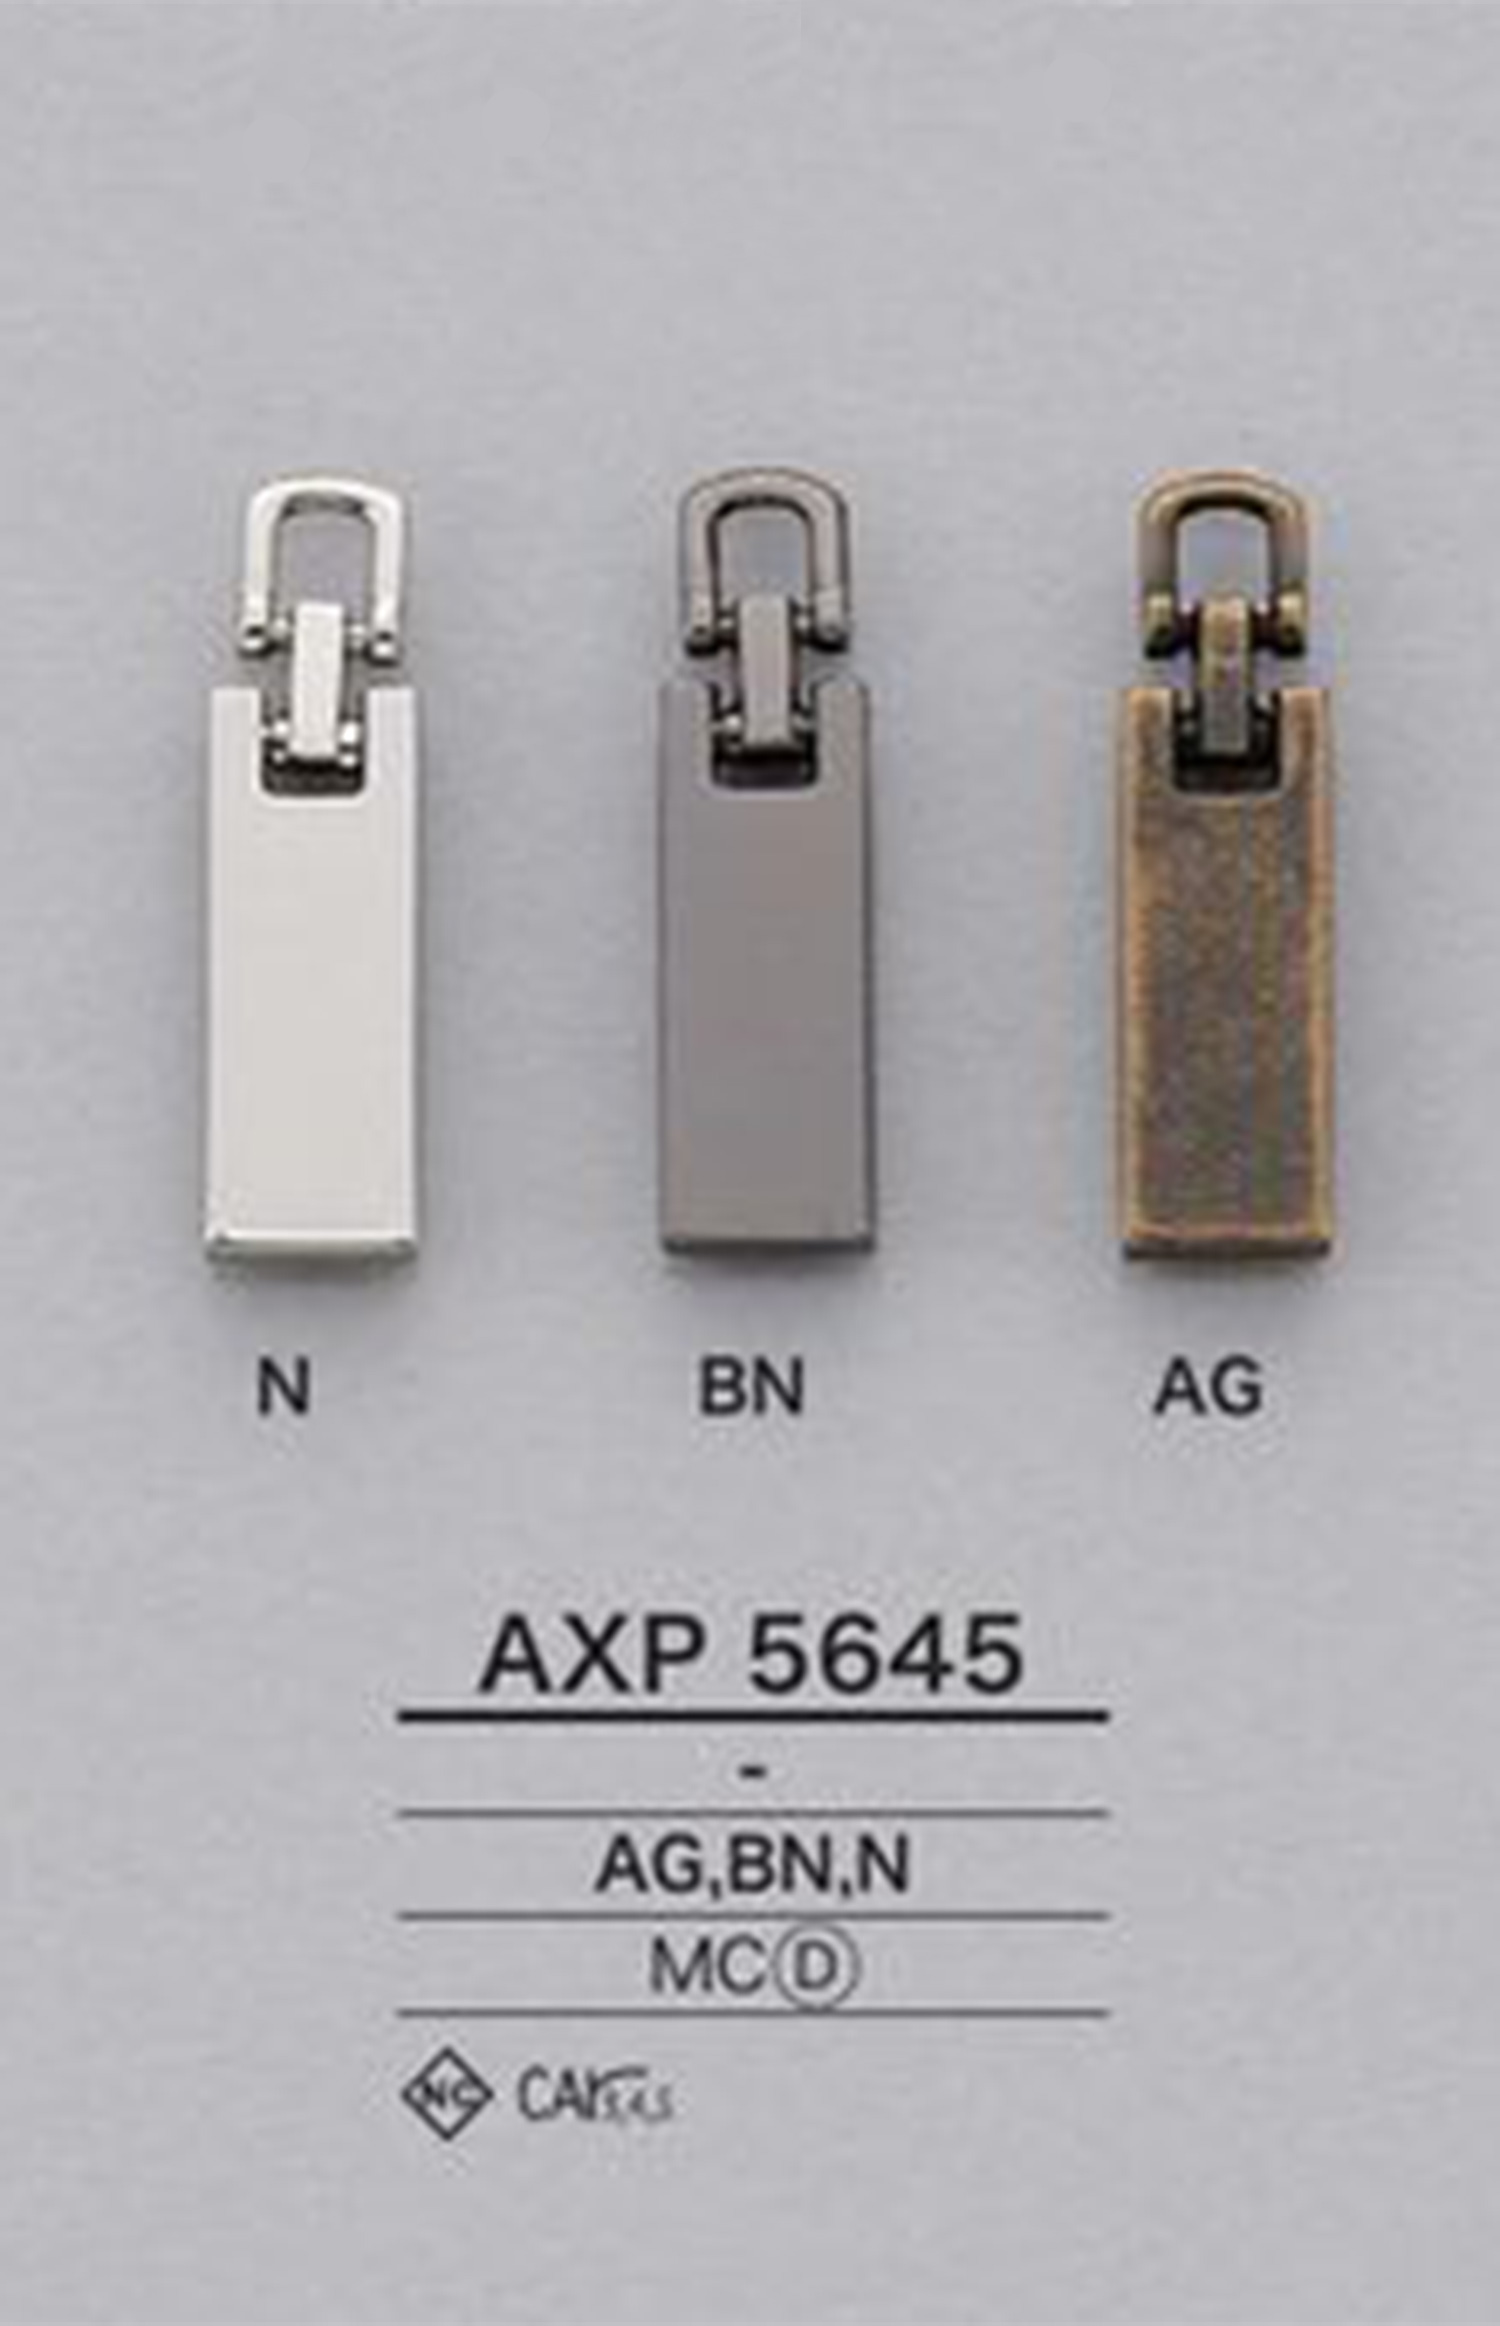 AXP5645 지퍼 포인트(지퍼 슬라이더) IRIS